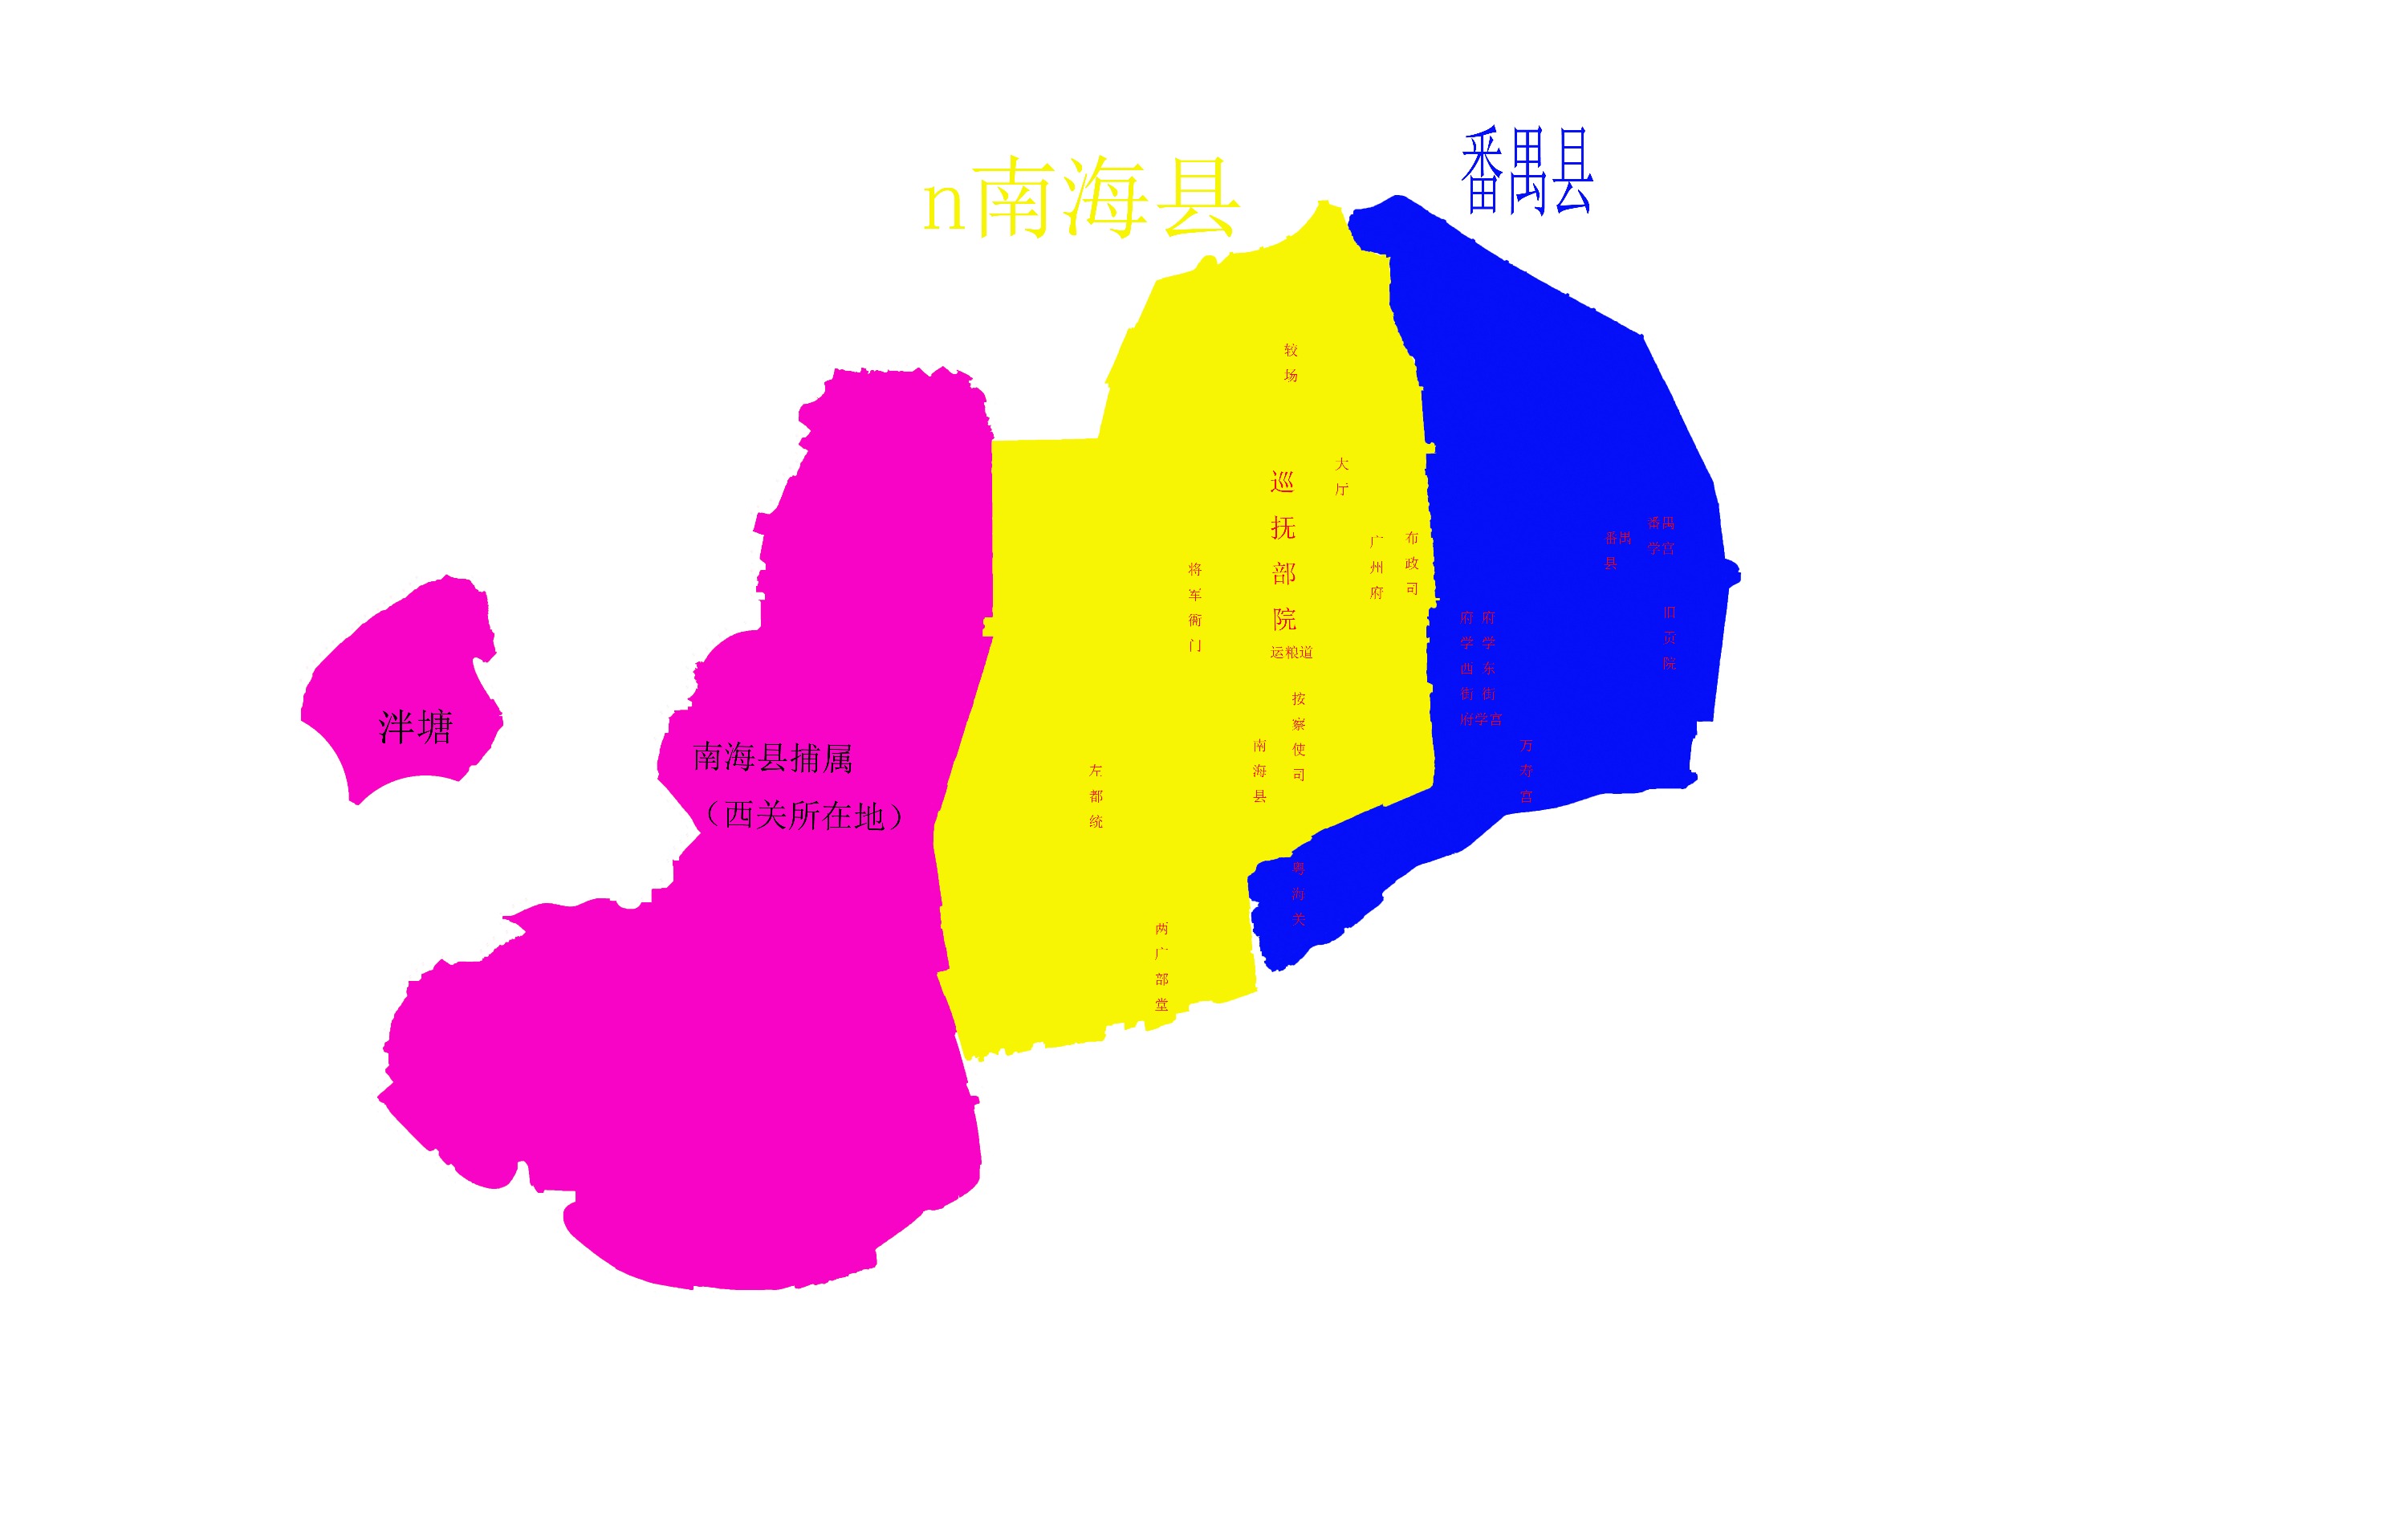 西關位於圖中紫色區域